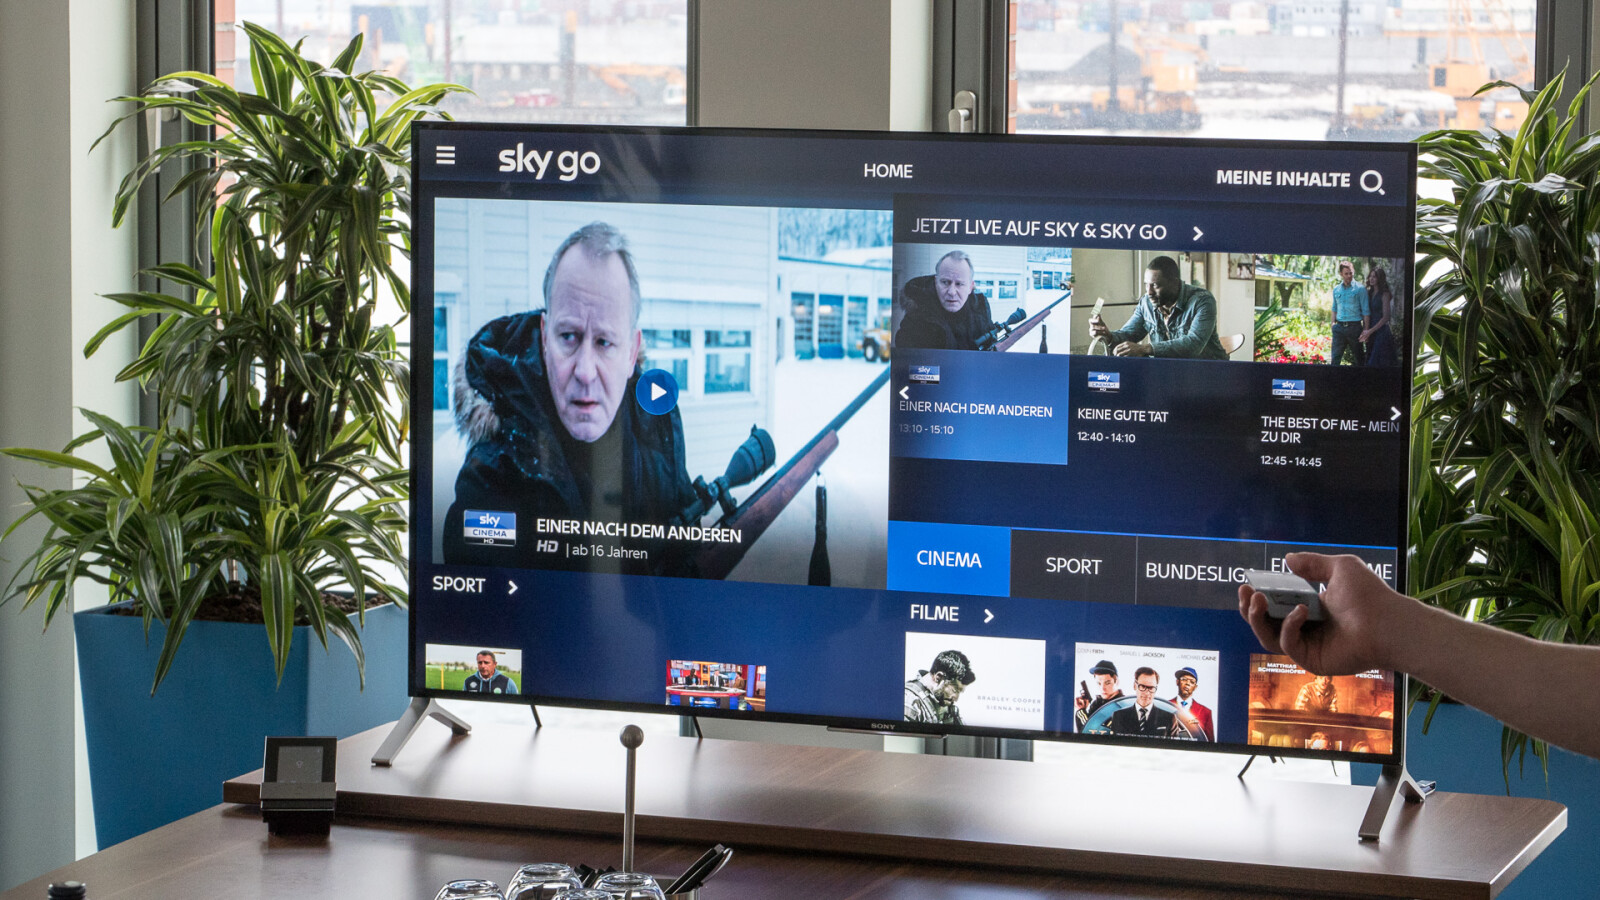 android-tv-so-installiert-und-nutzt-ihr-sky-go-auf-dem-fernseher